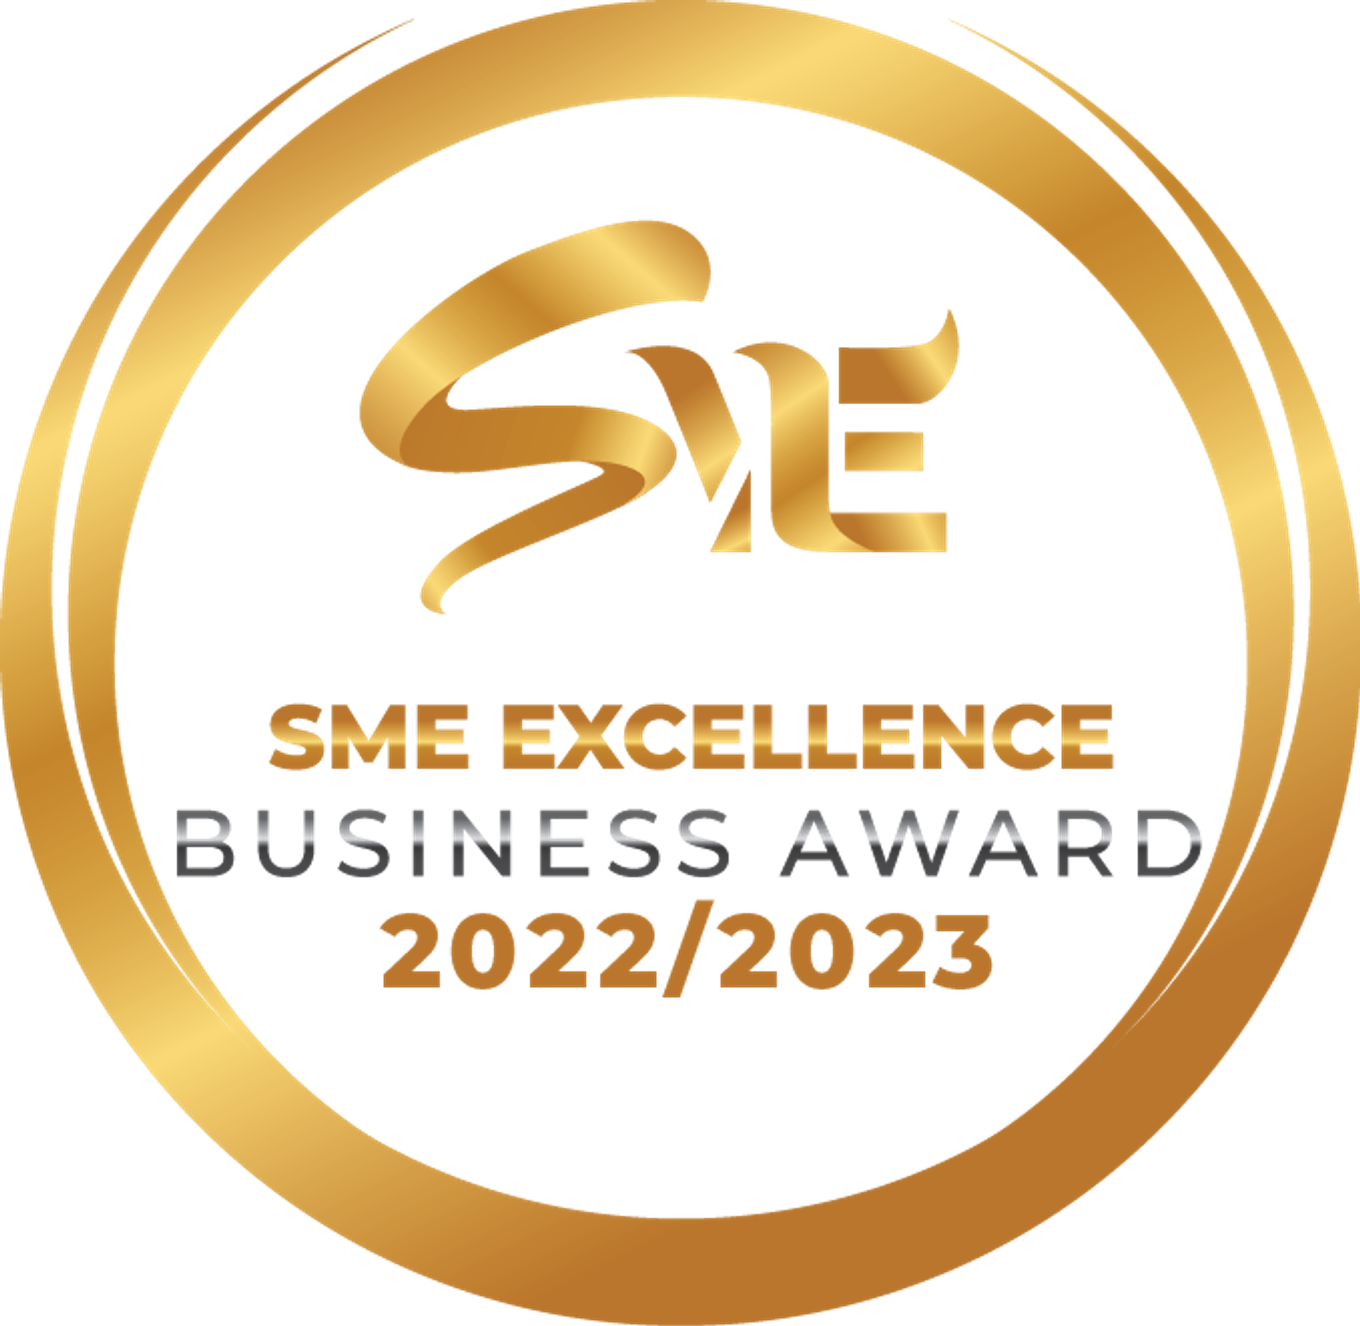 SME Excellence Service Award